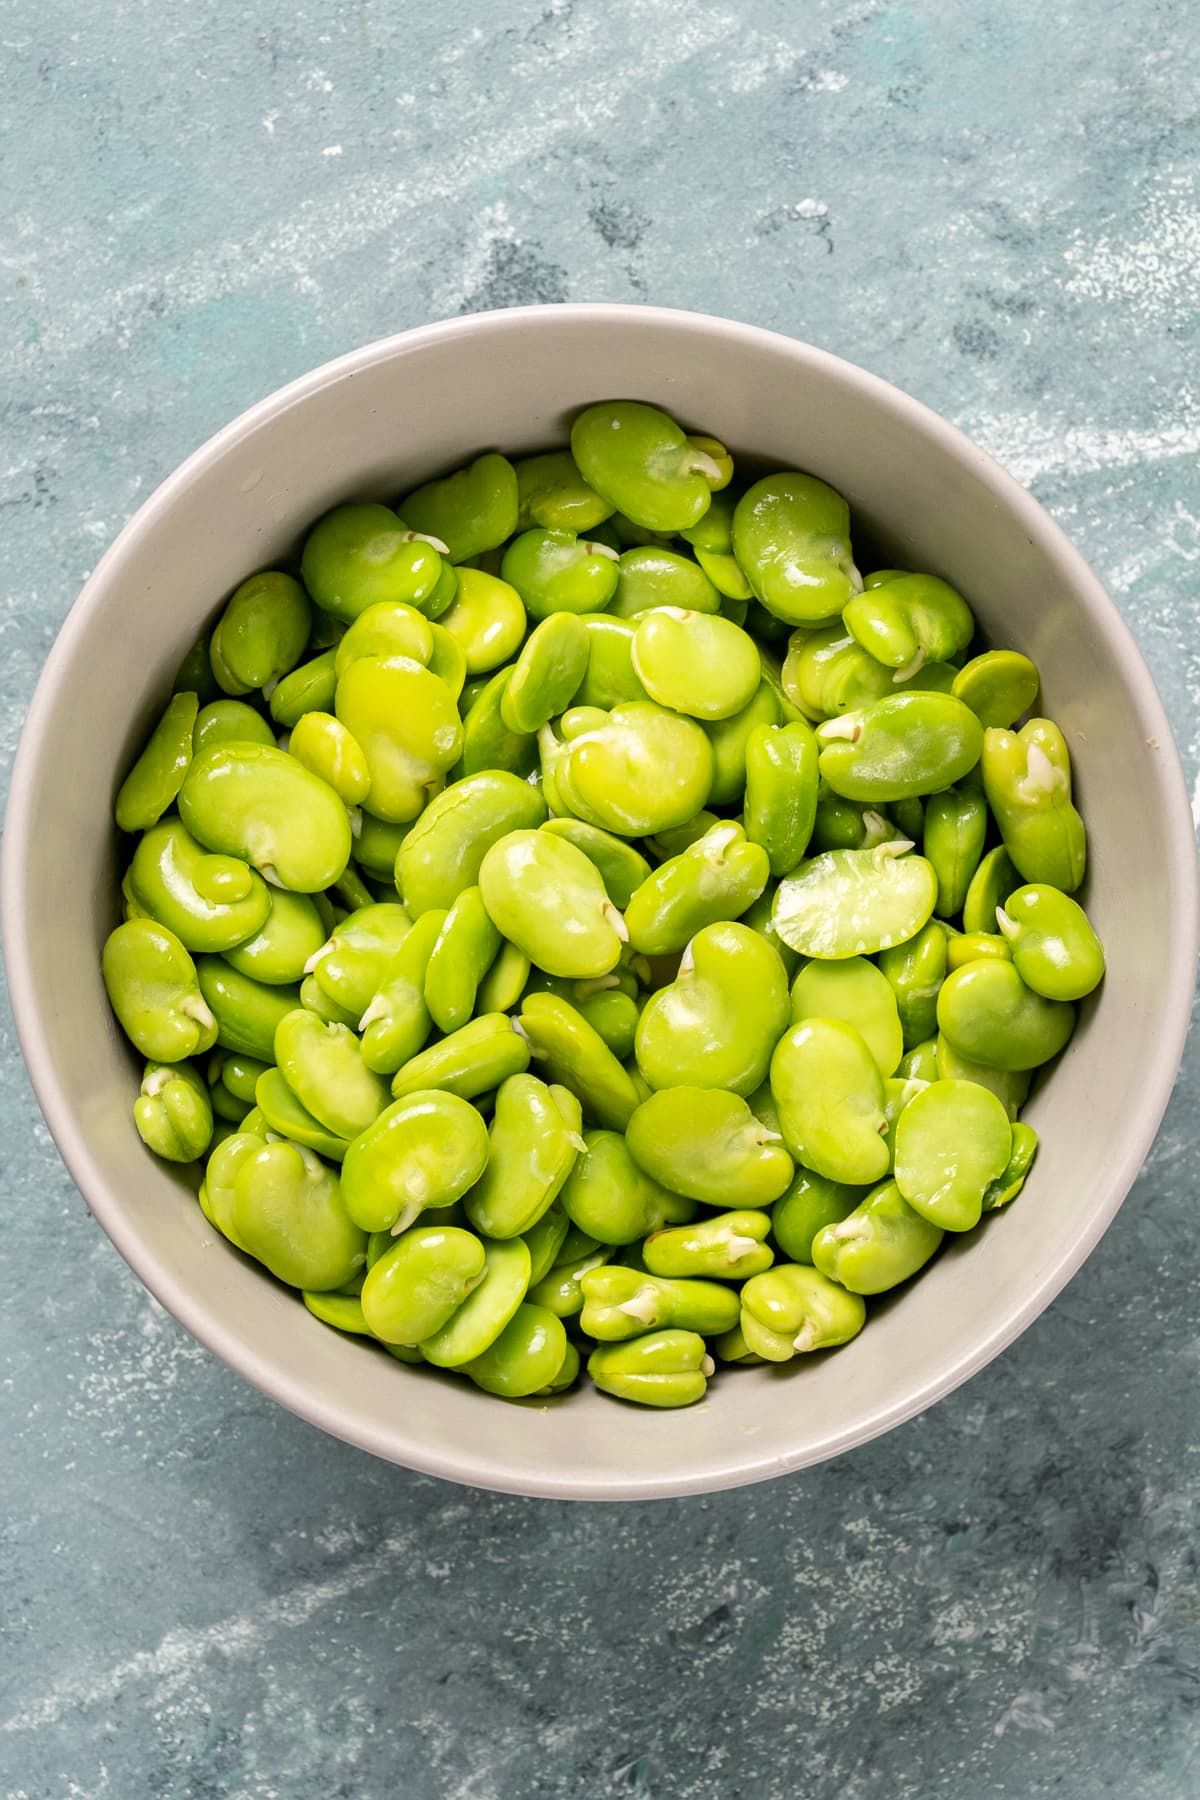 鲜绿色的蚕豆装在白色的碗里。